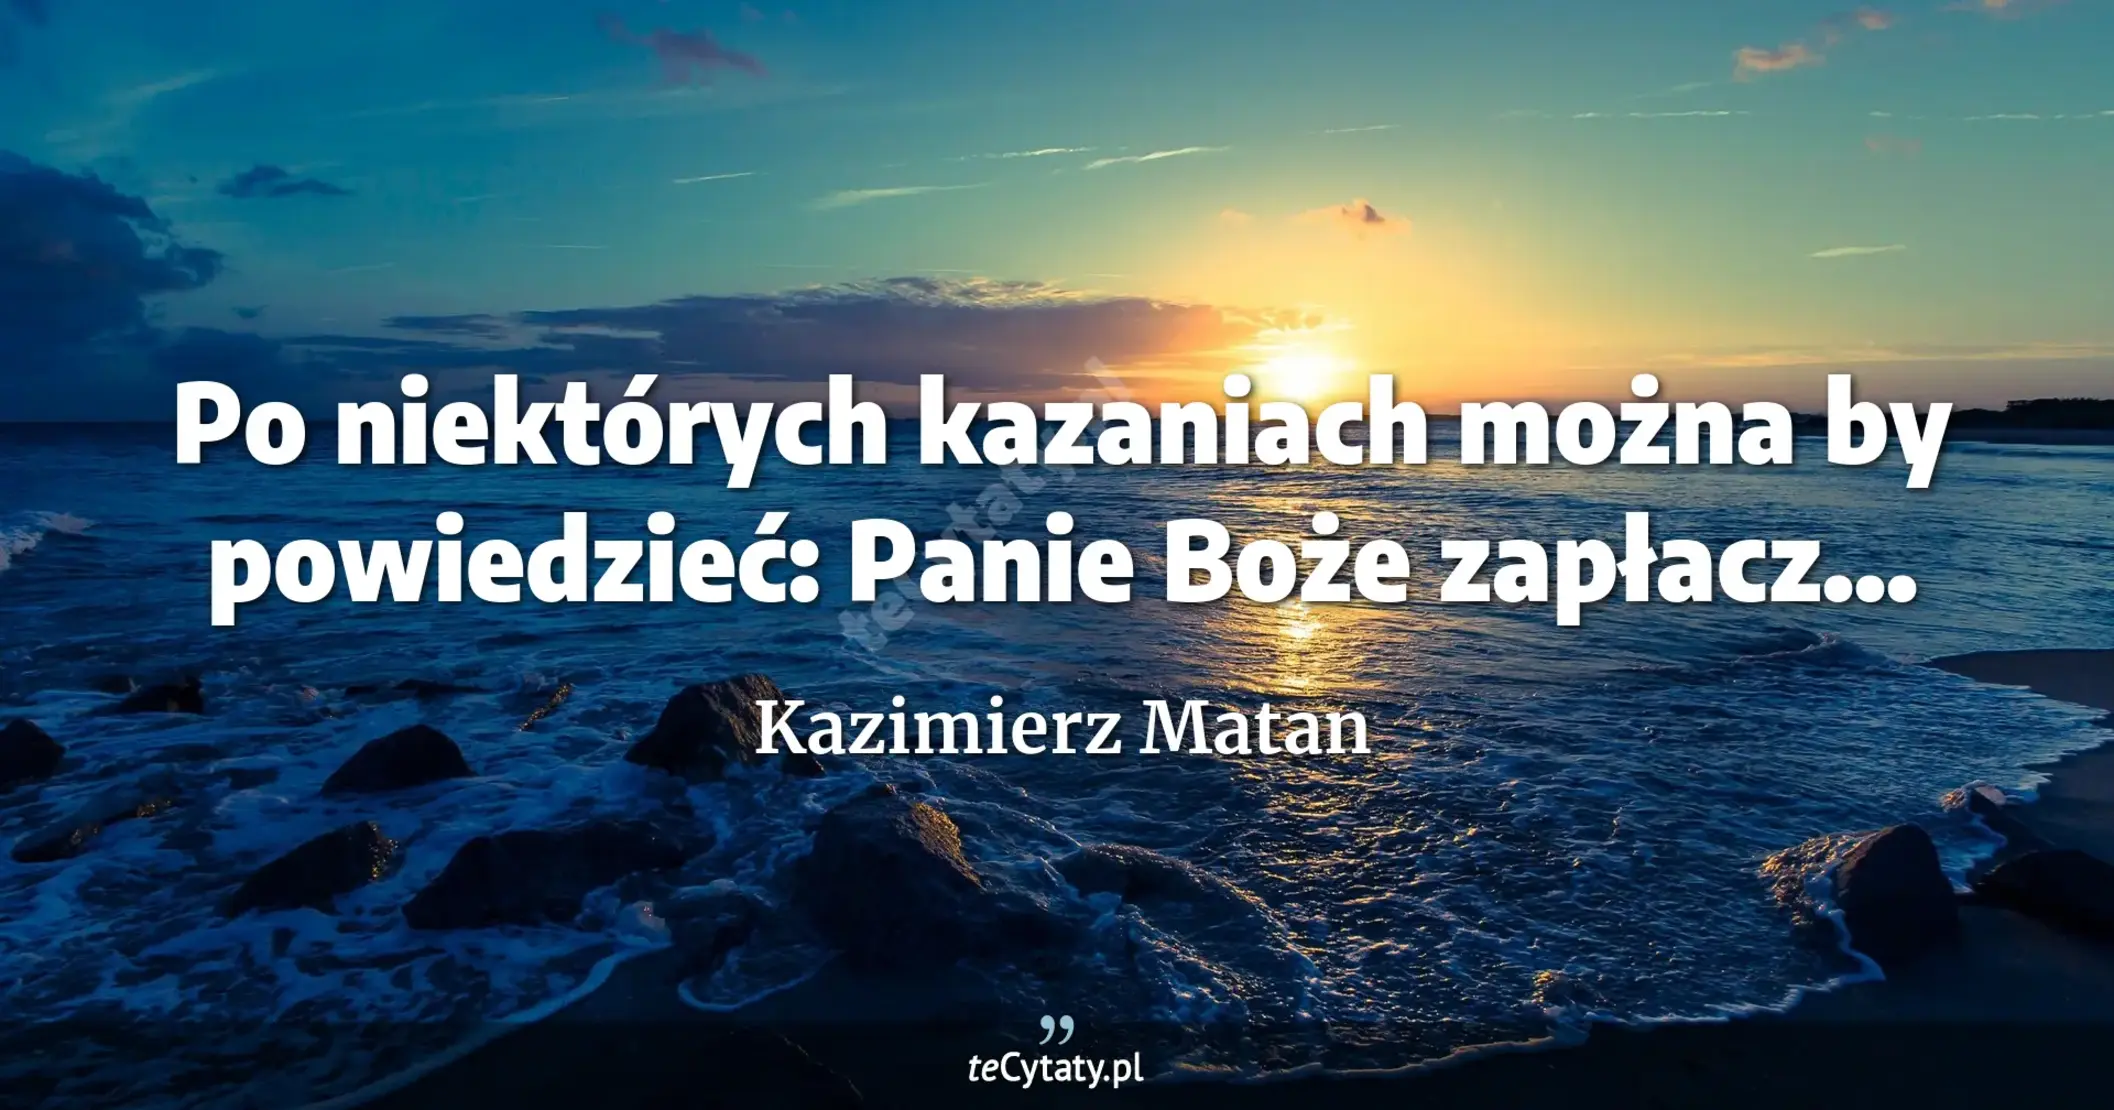 Po niektórych kazaniach można by powiedzieć: Panie Boże zapłacz... - Kazimierz Matan